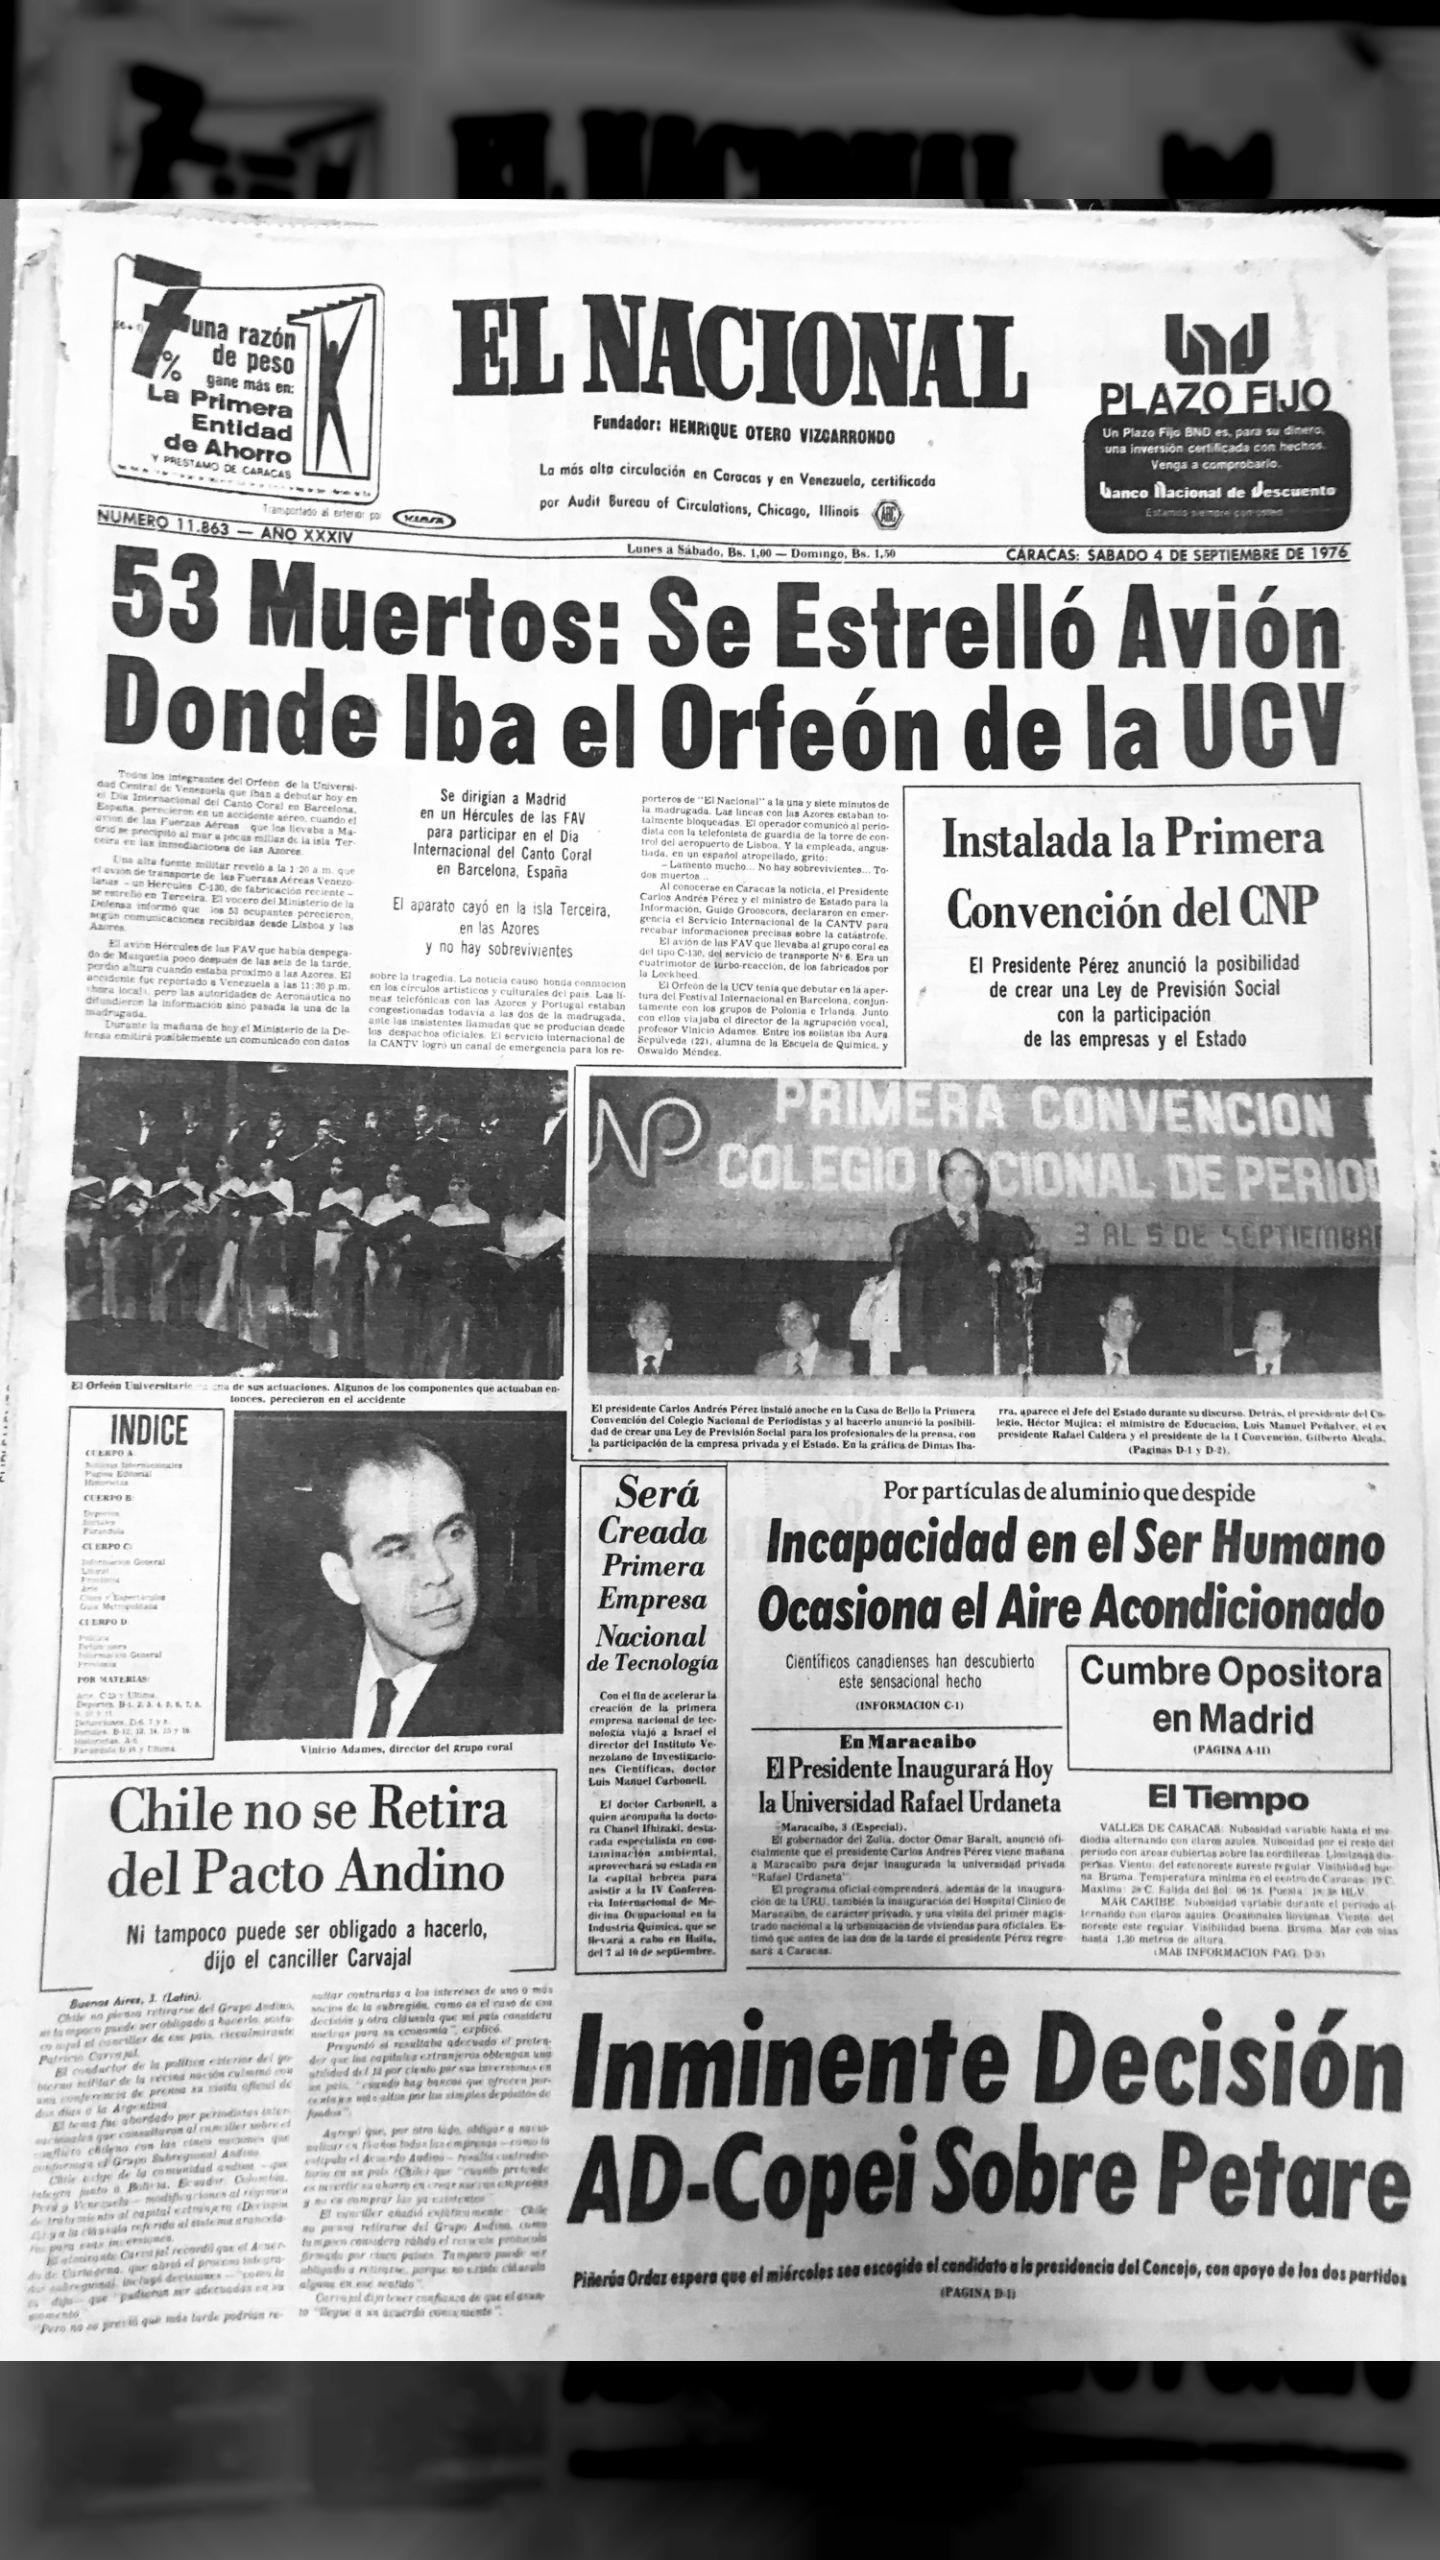 53 Muertos: Se Estrelló Avión Donde Iba el Orfeón Universitario de la UCV (El Nacional, 04 de septiembre 1976)